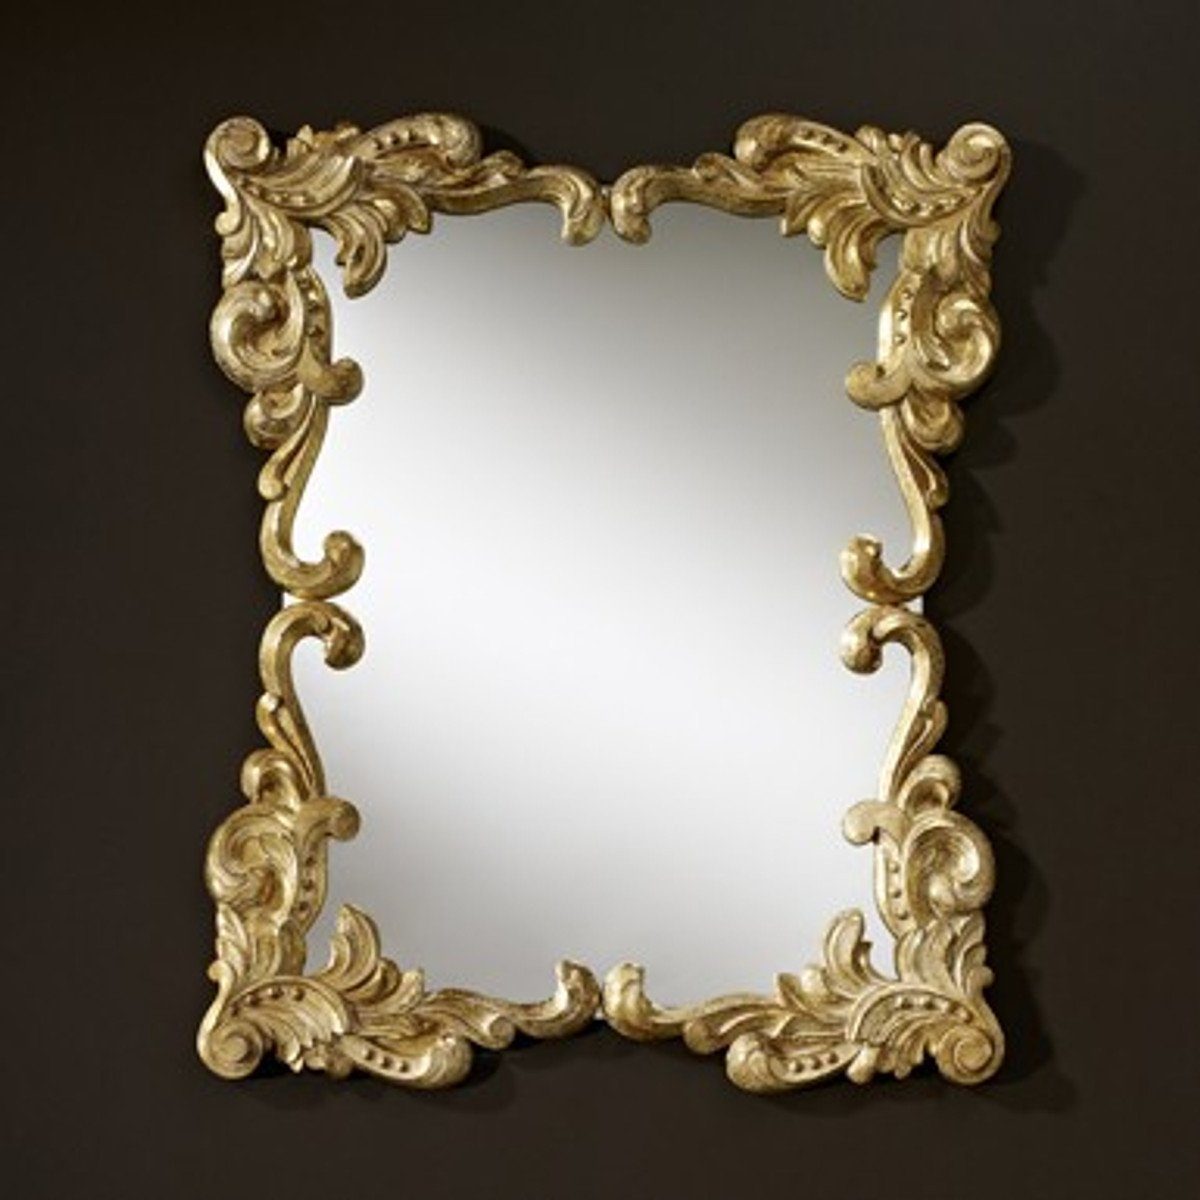 Casa Padrino Barockspiegel Barock Wandspiegel Antik Stil Gold 92 x 110 cm - Barocker Spiegel